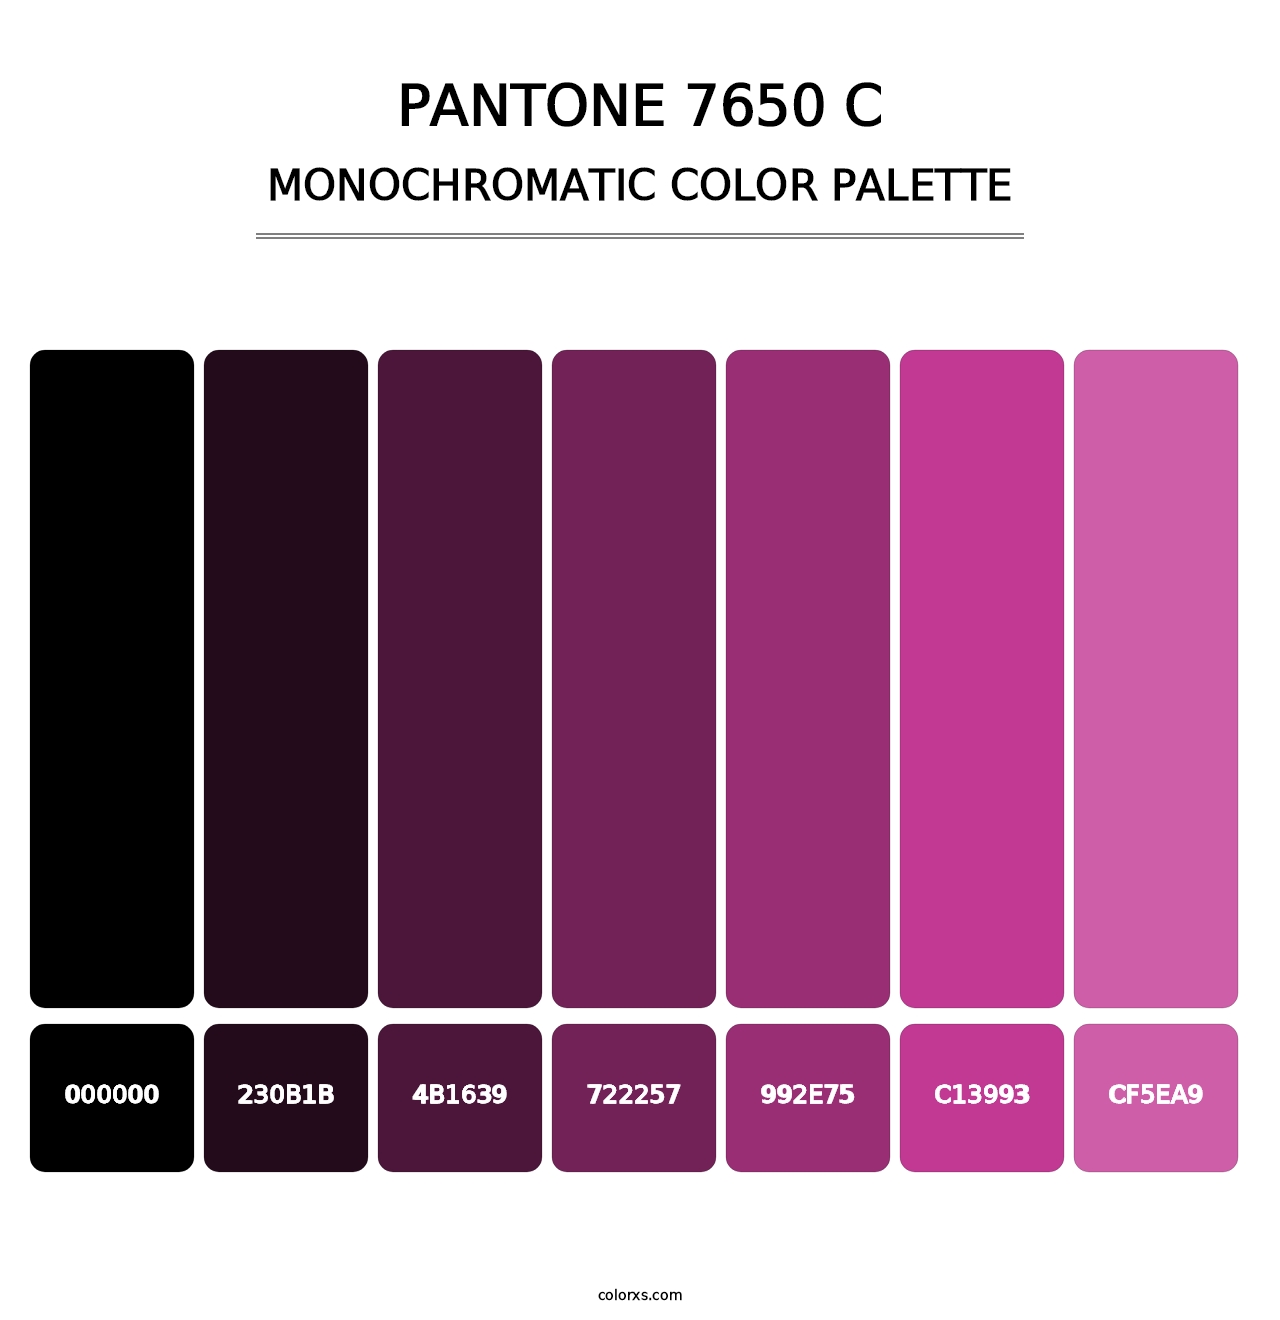 PANTONE 7650 C - Monochromatic Color Palette